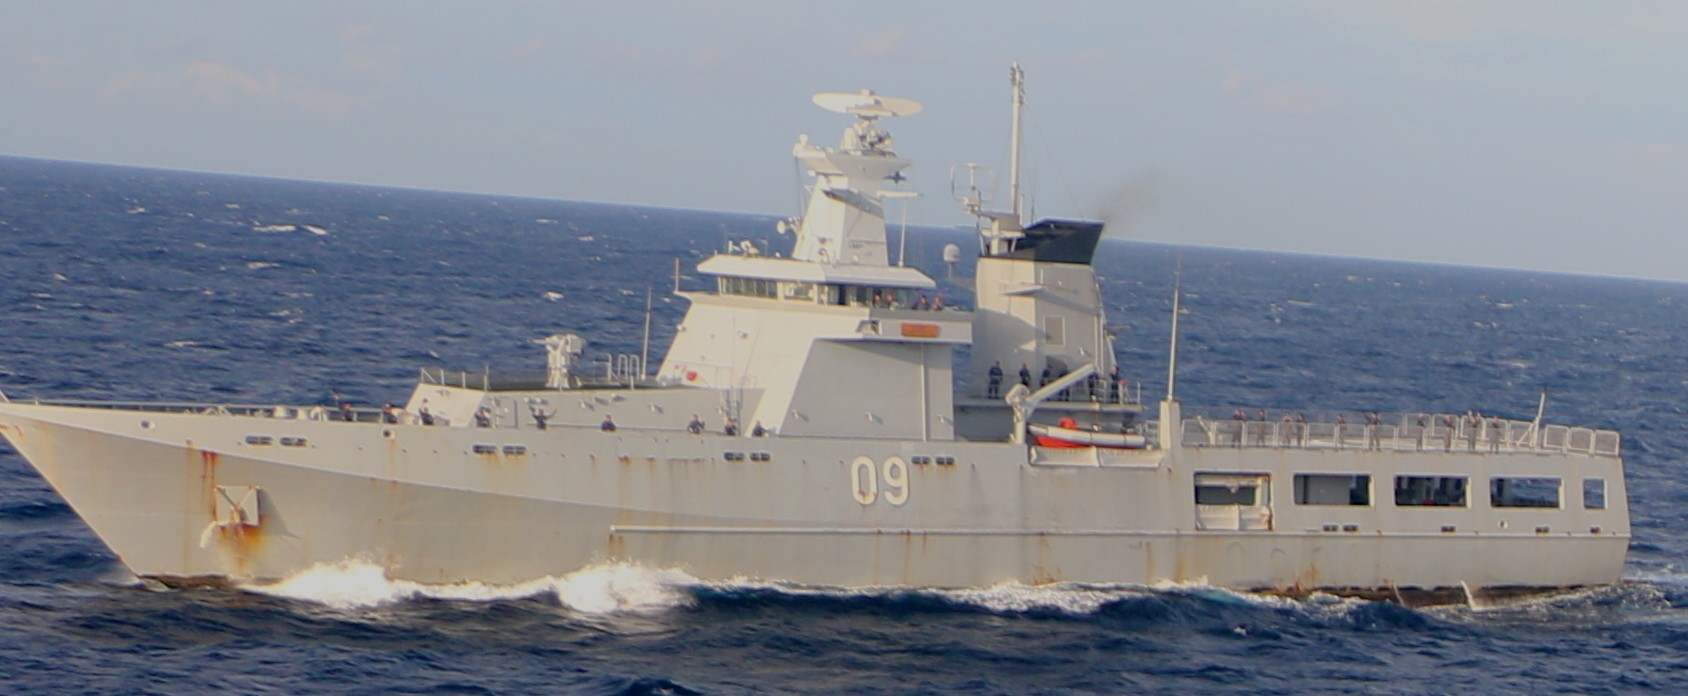 opv 09 kdb daruttaqwa offshore patrol vessel darussalem class royal brunei navy mlg27 03